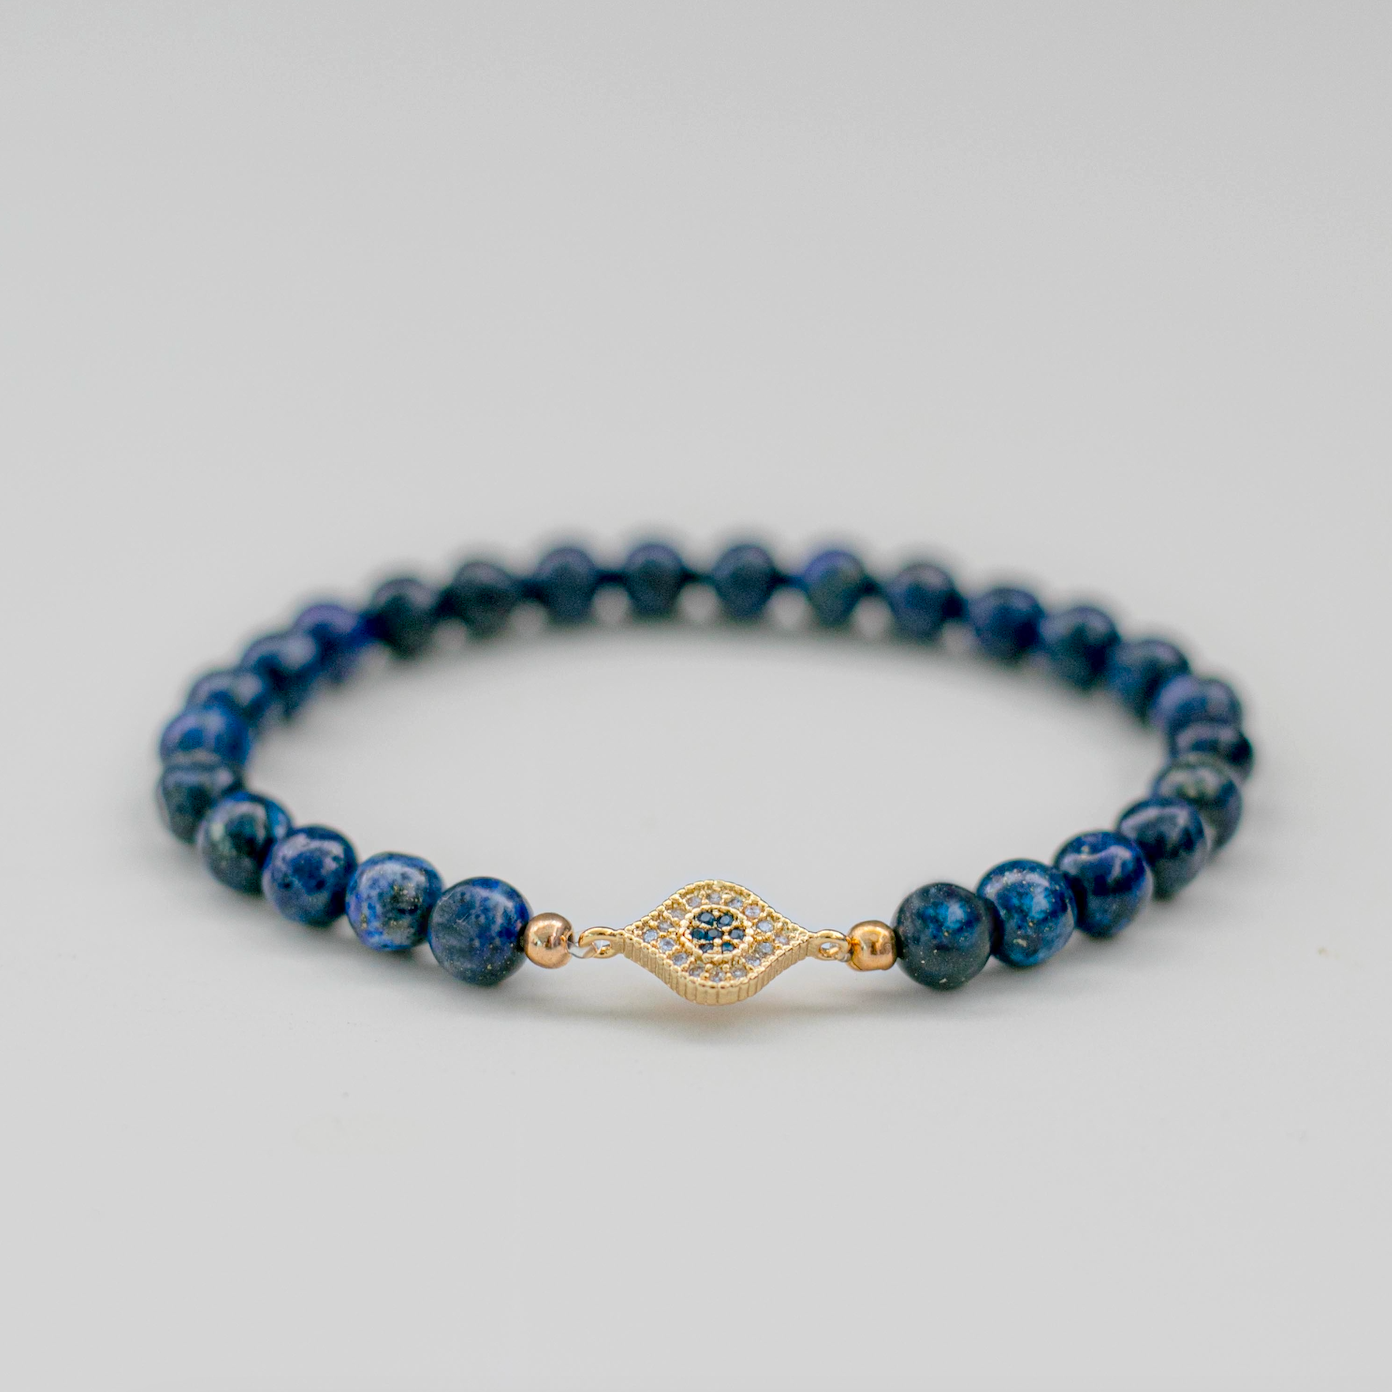 Lapis Lazuli (青金石) | Oval Evil Eye Bracelet | The Stone of Truth & Wisdom